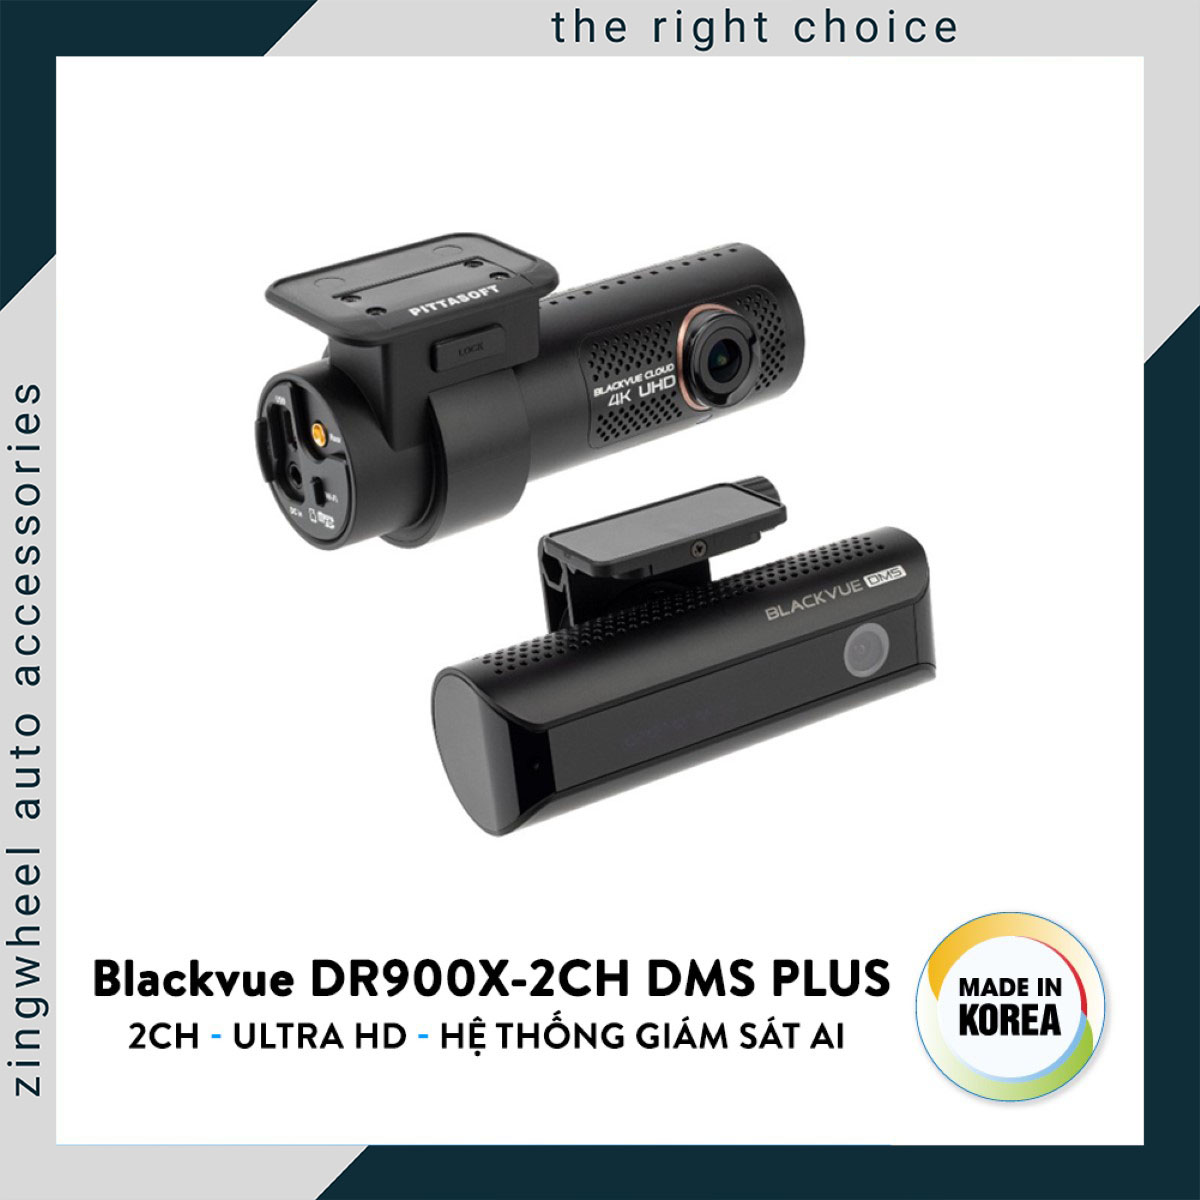 Camera hành trình Blackvue DR900X - 2CH DMS Plus đến từ Hàn Quốc